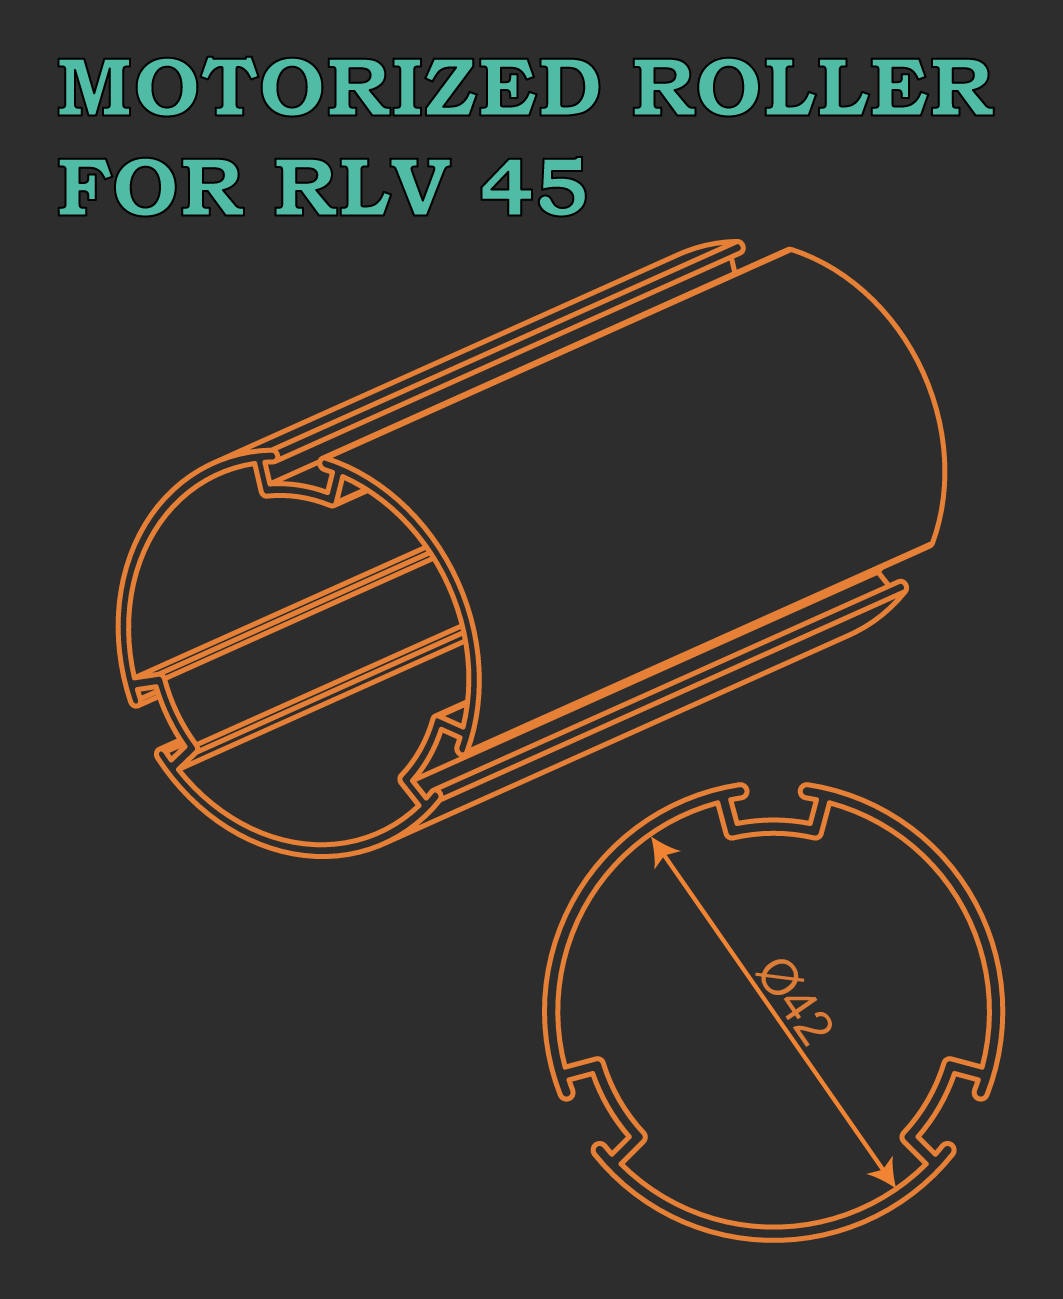 MOTORIZED ROLLER FOR RLV 45